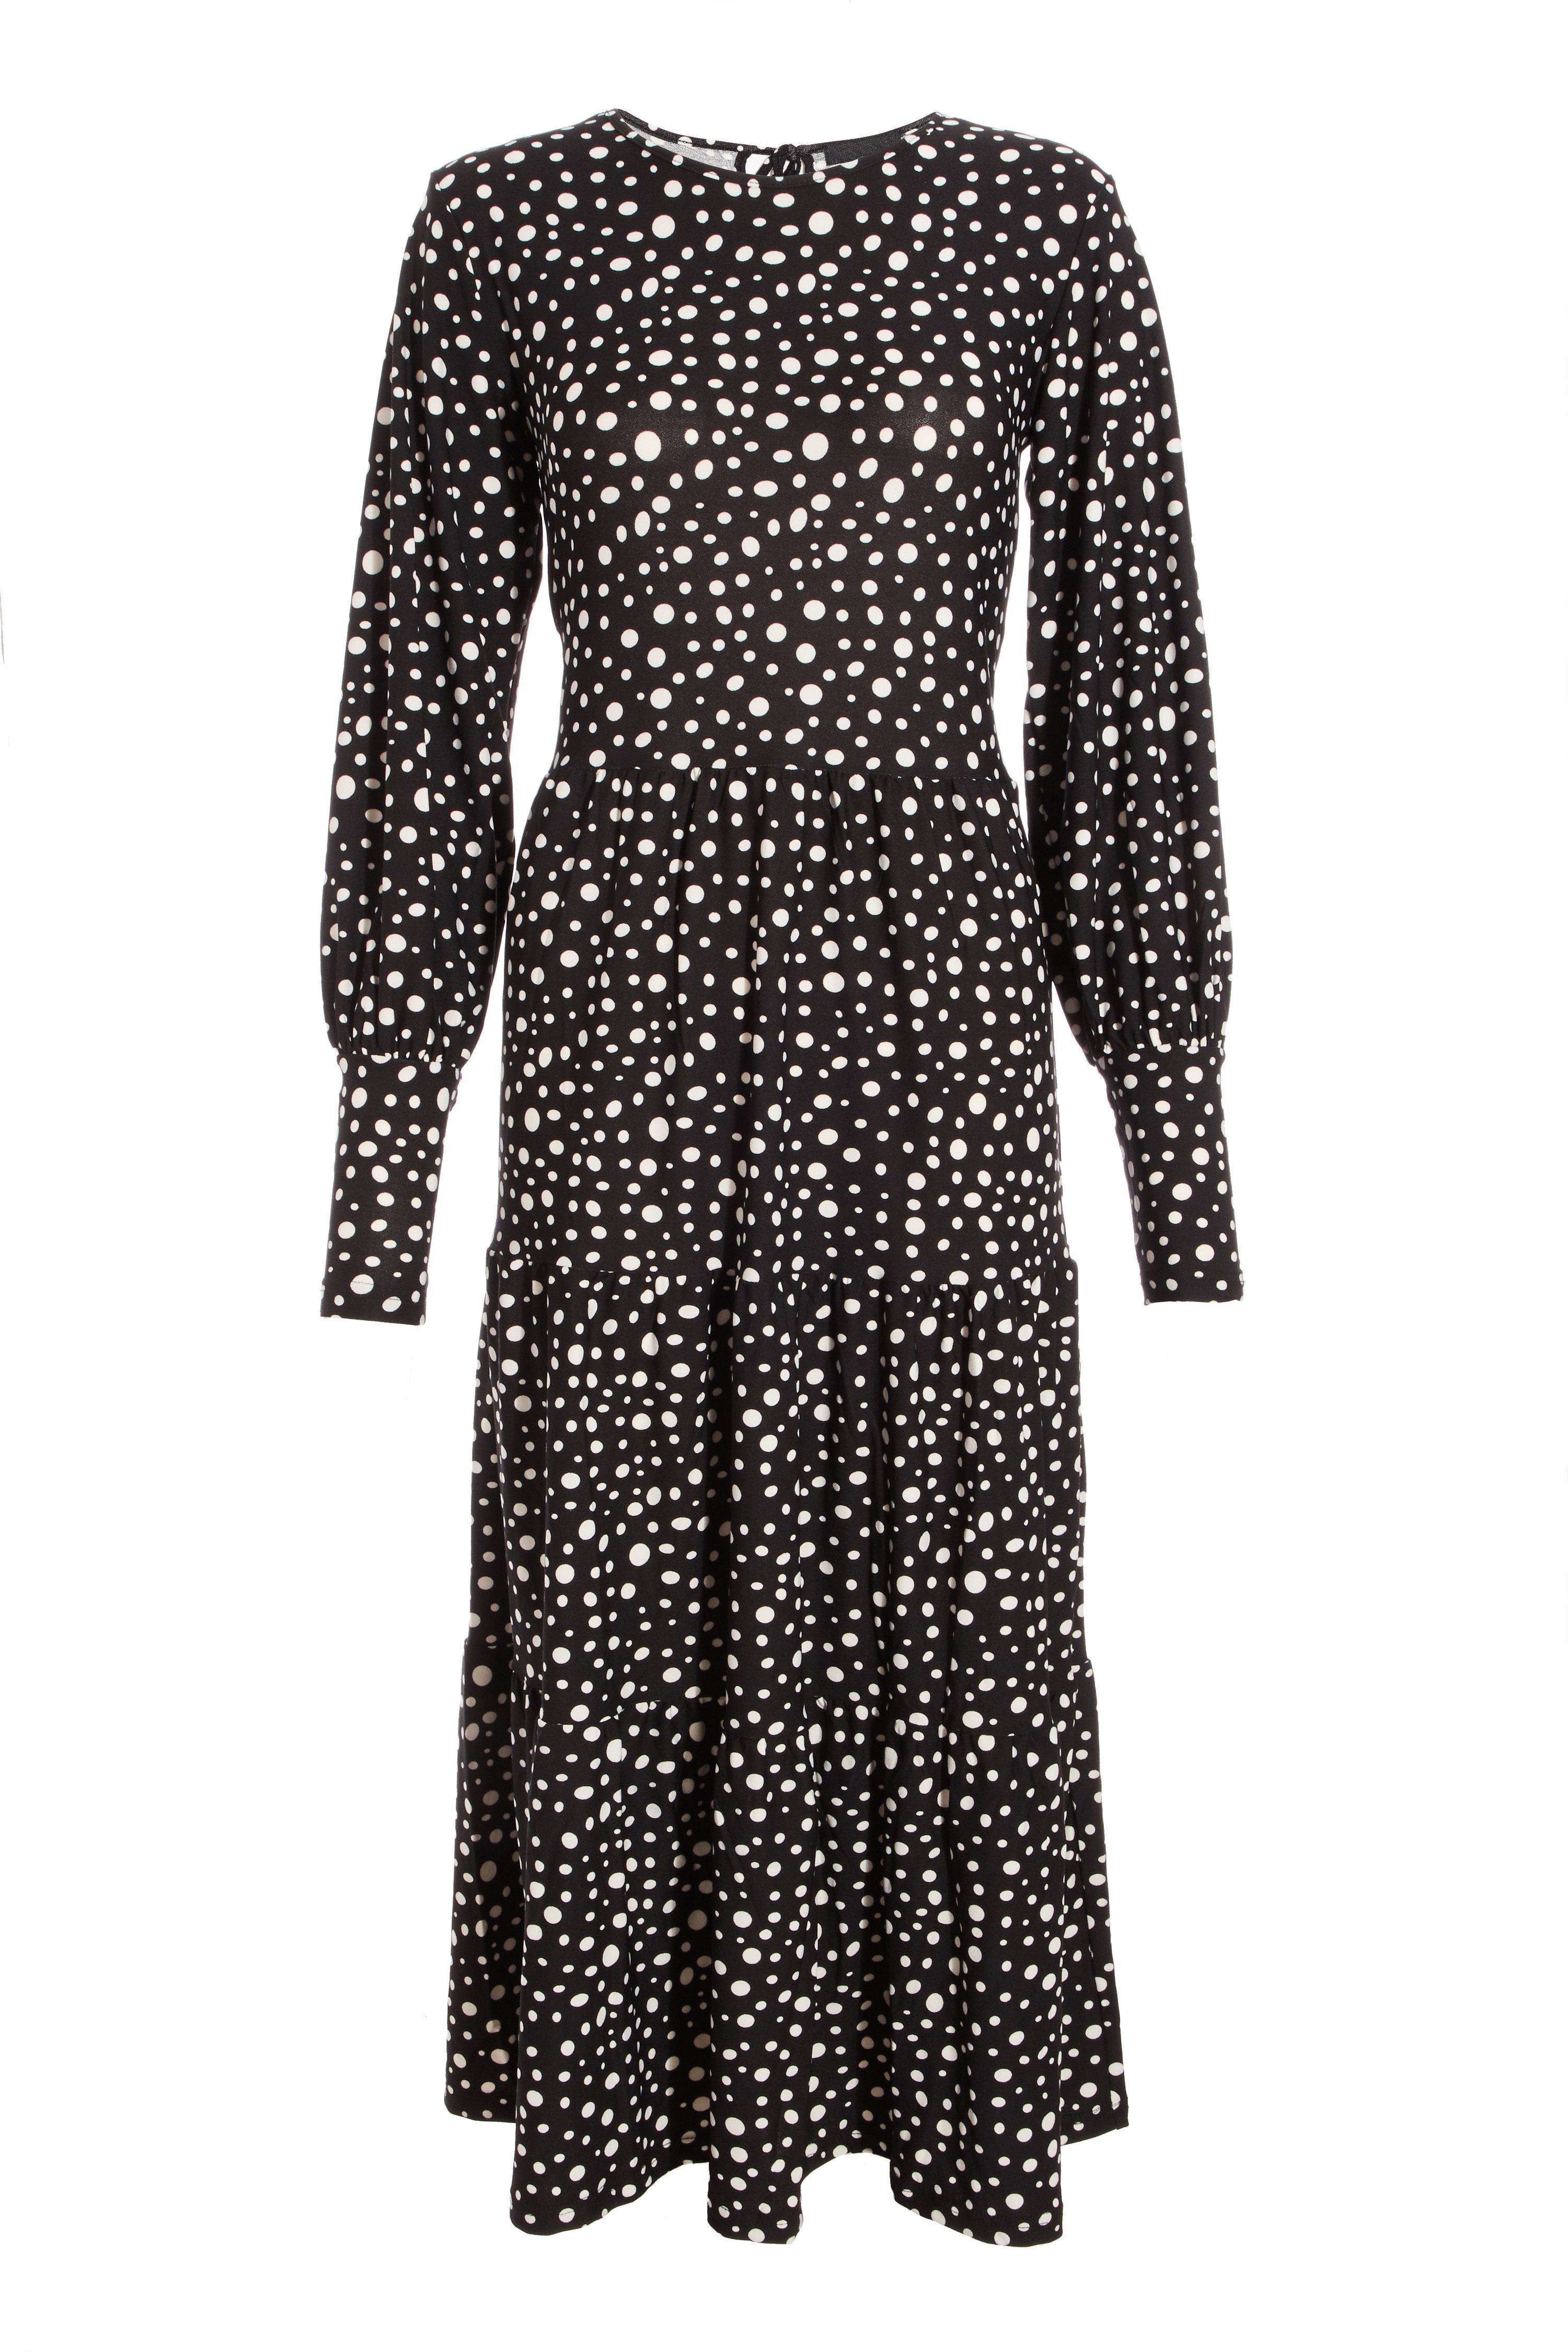 Black Spot Print Tiered Midi Dress - Quiz Clothing